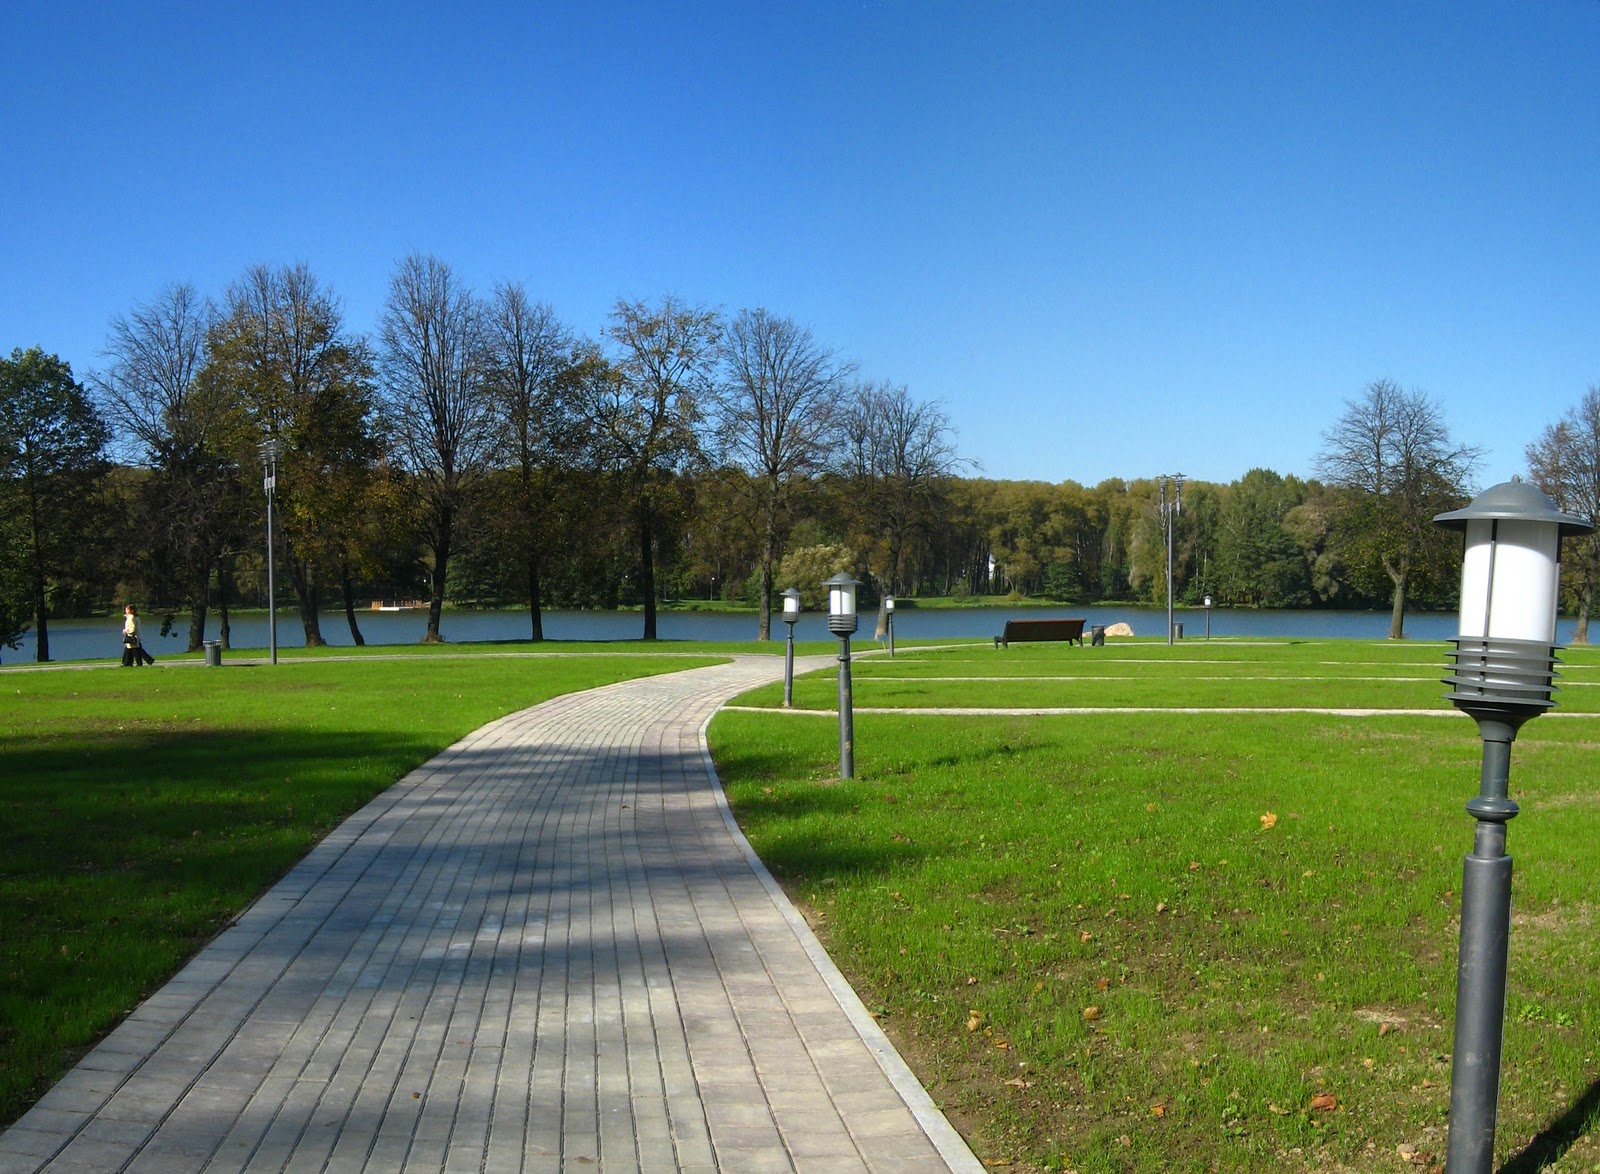 Минский парк